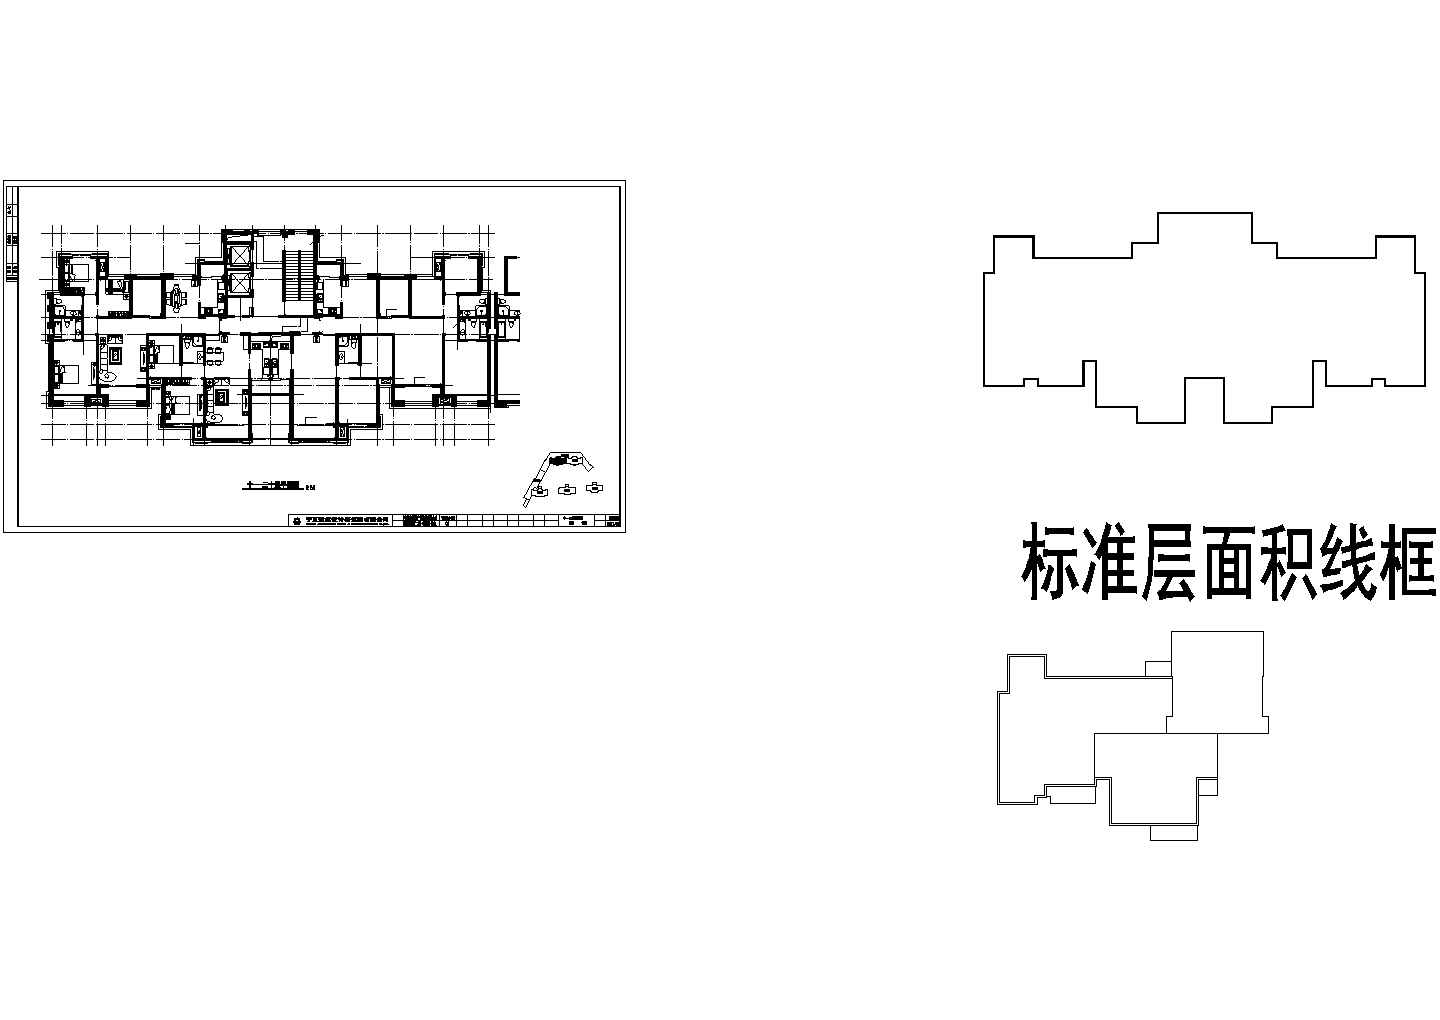 蚌埠市利康花园小区高层住宅楼标准层平面设计CAD图纸（1梯4户）